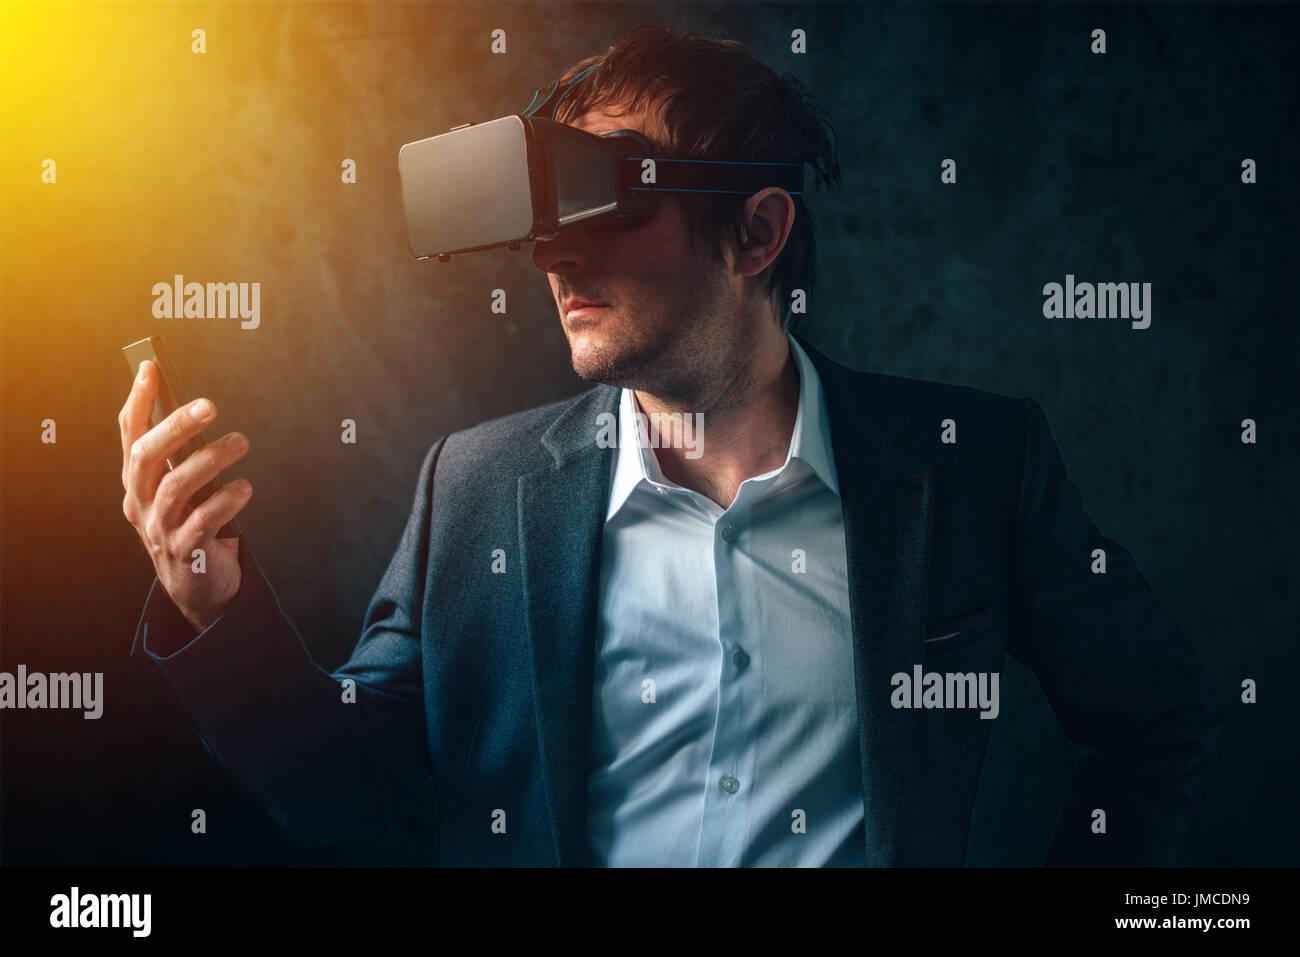 La réalité virtuelle et la technologie futuriste dans l'entreprise moderne, businessman avec casque VR et smart phone en utilisant de nouveaux gadgets haute technologie pour développer et gérer Banque D'Images